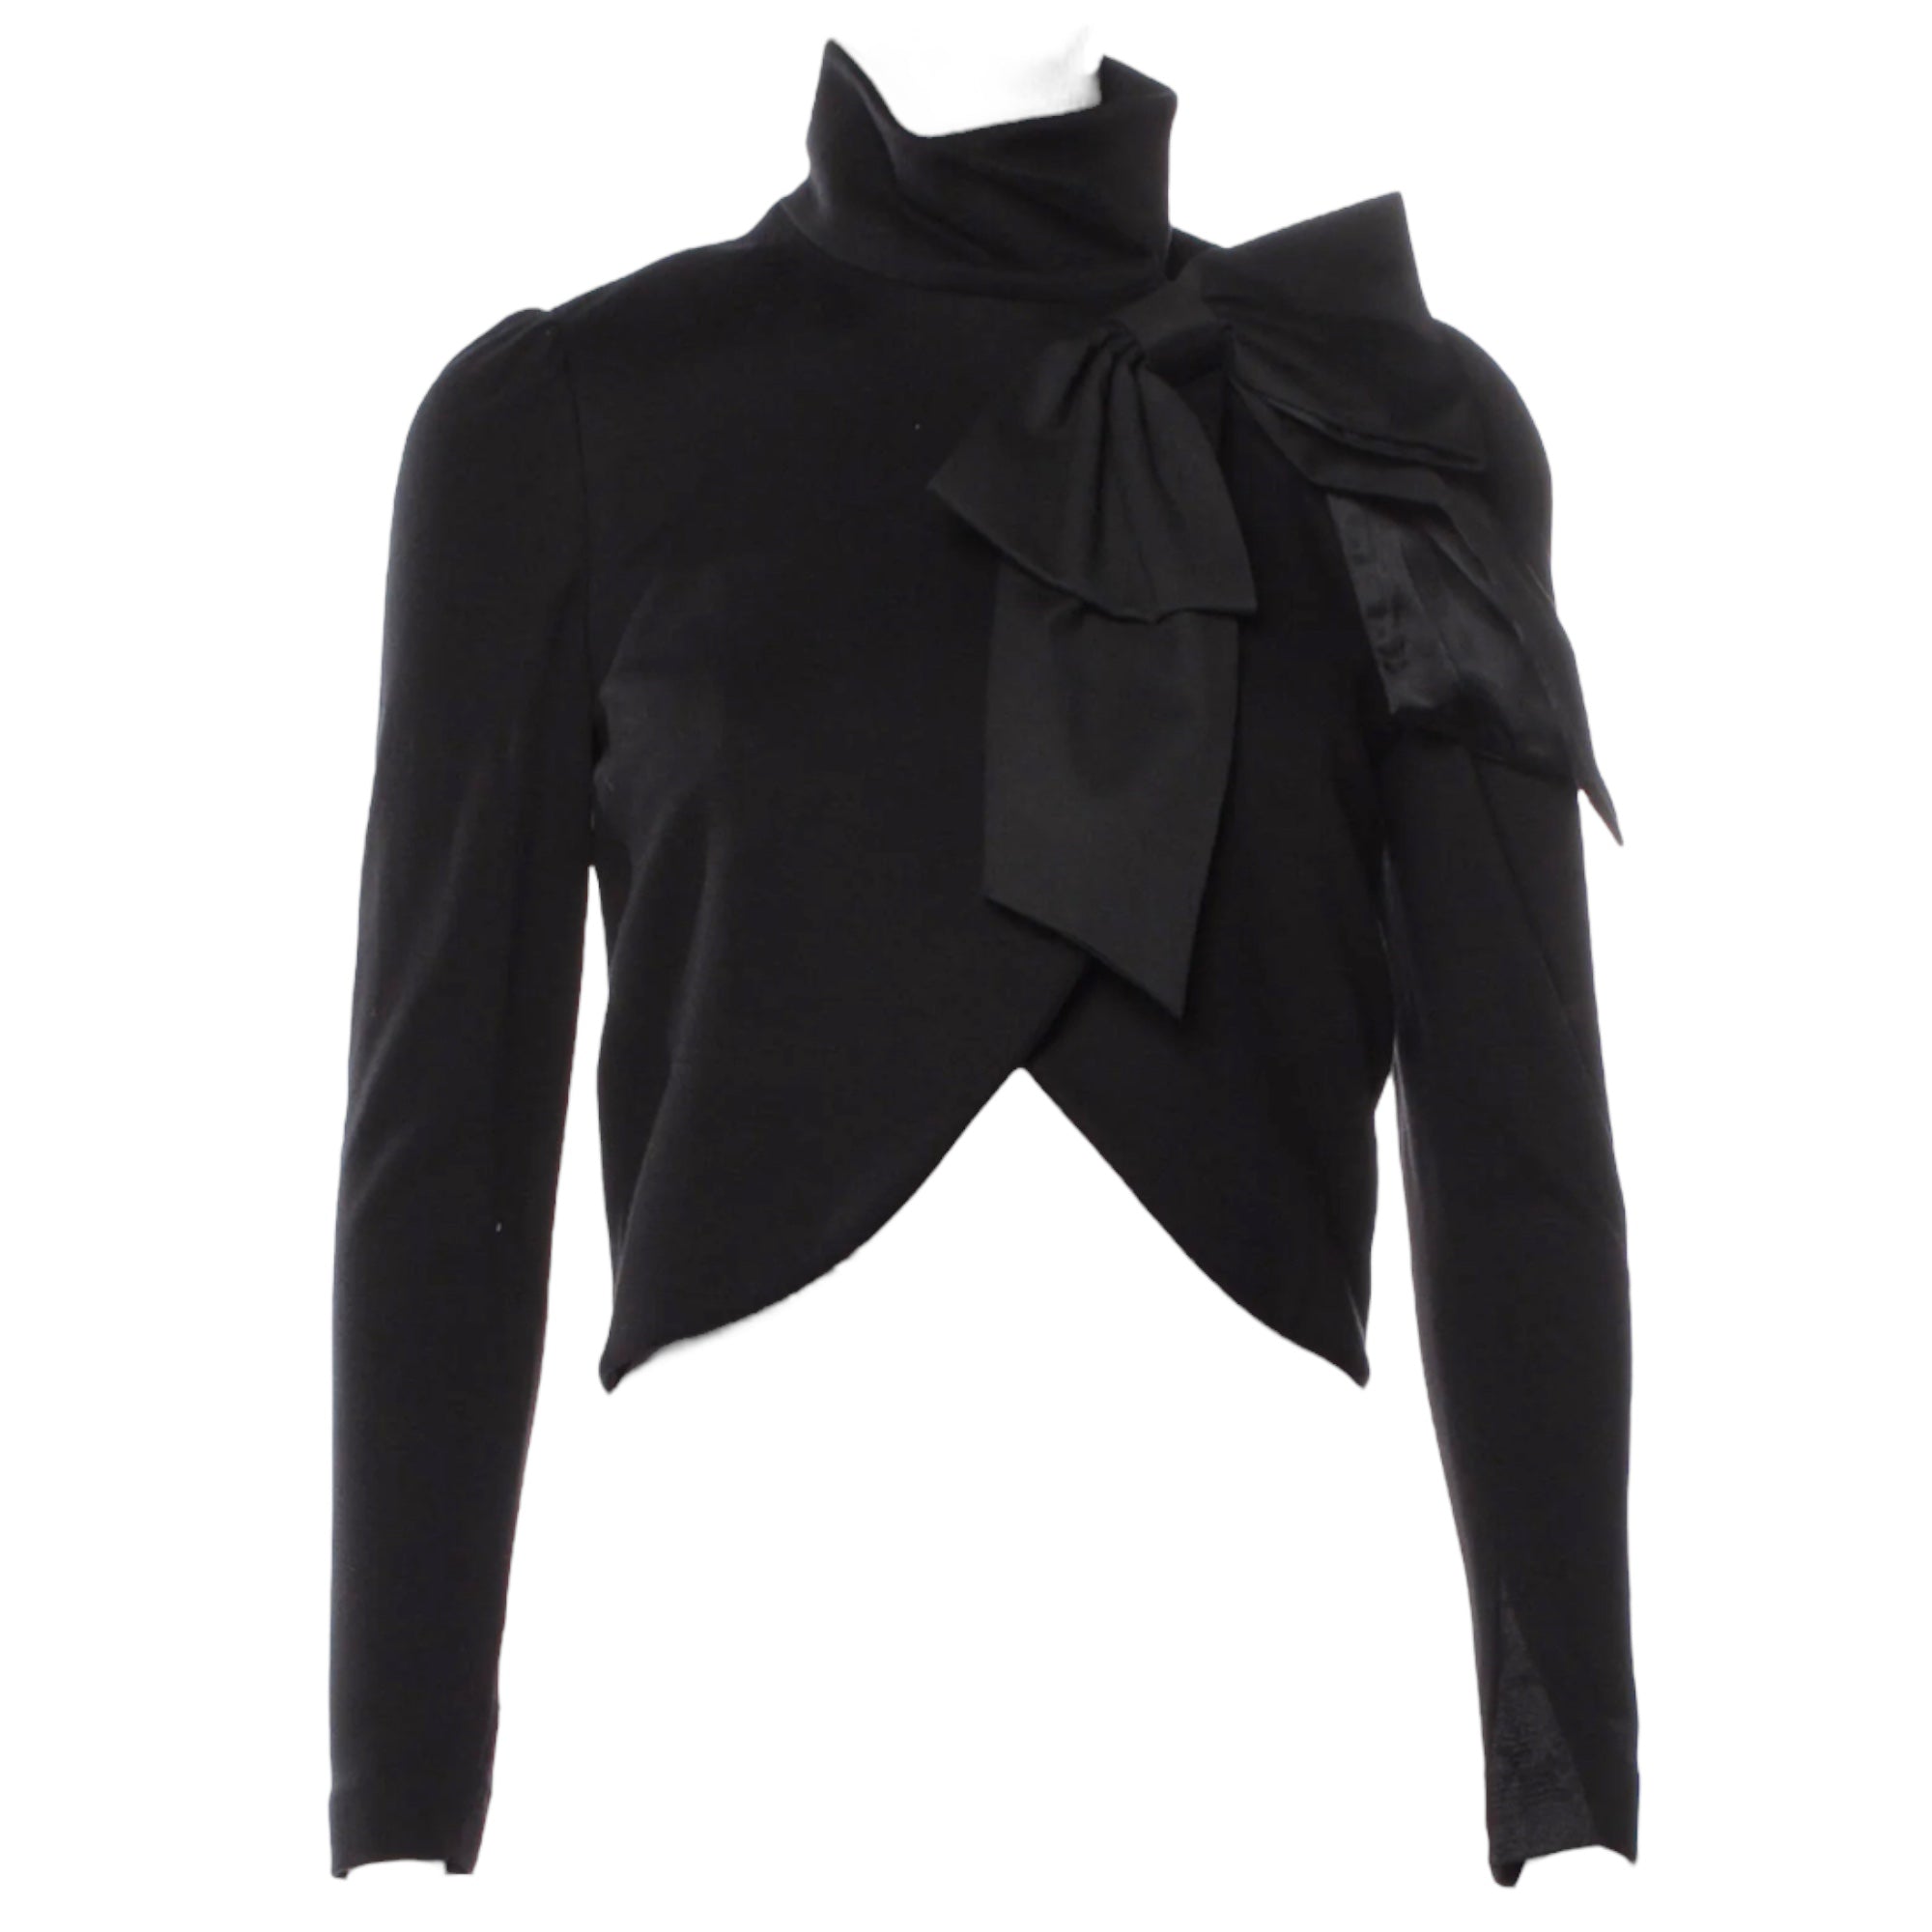 Alice + Olivia Black Bolero Jacket with Stunning Bow Accent  |SIZE: XS|